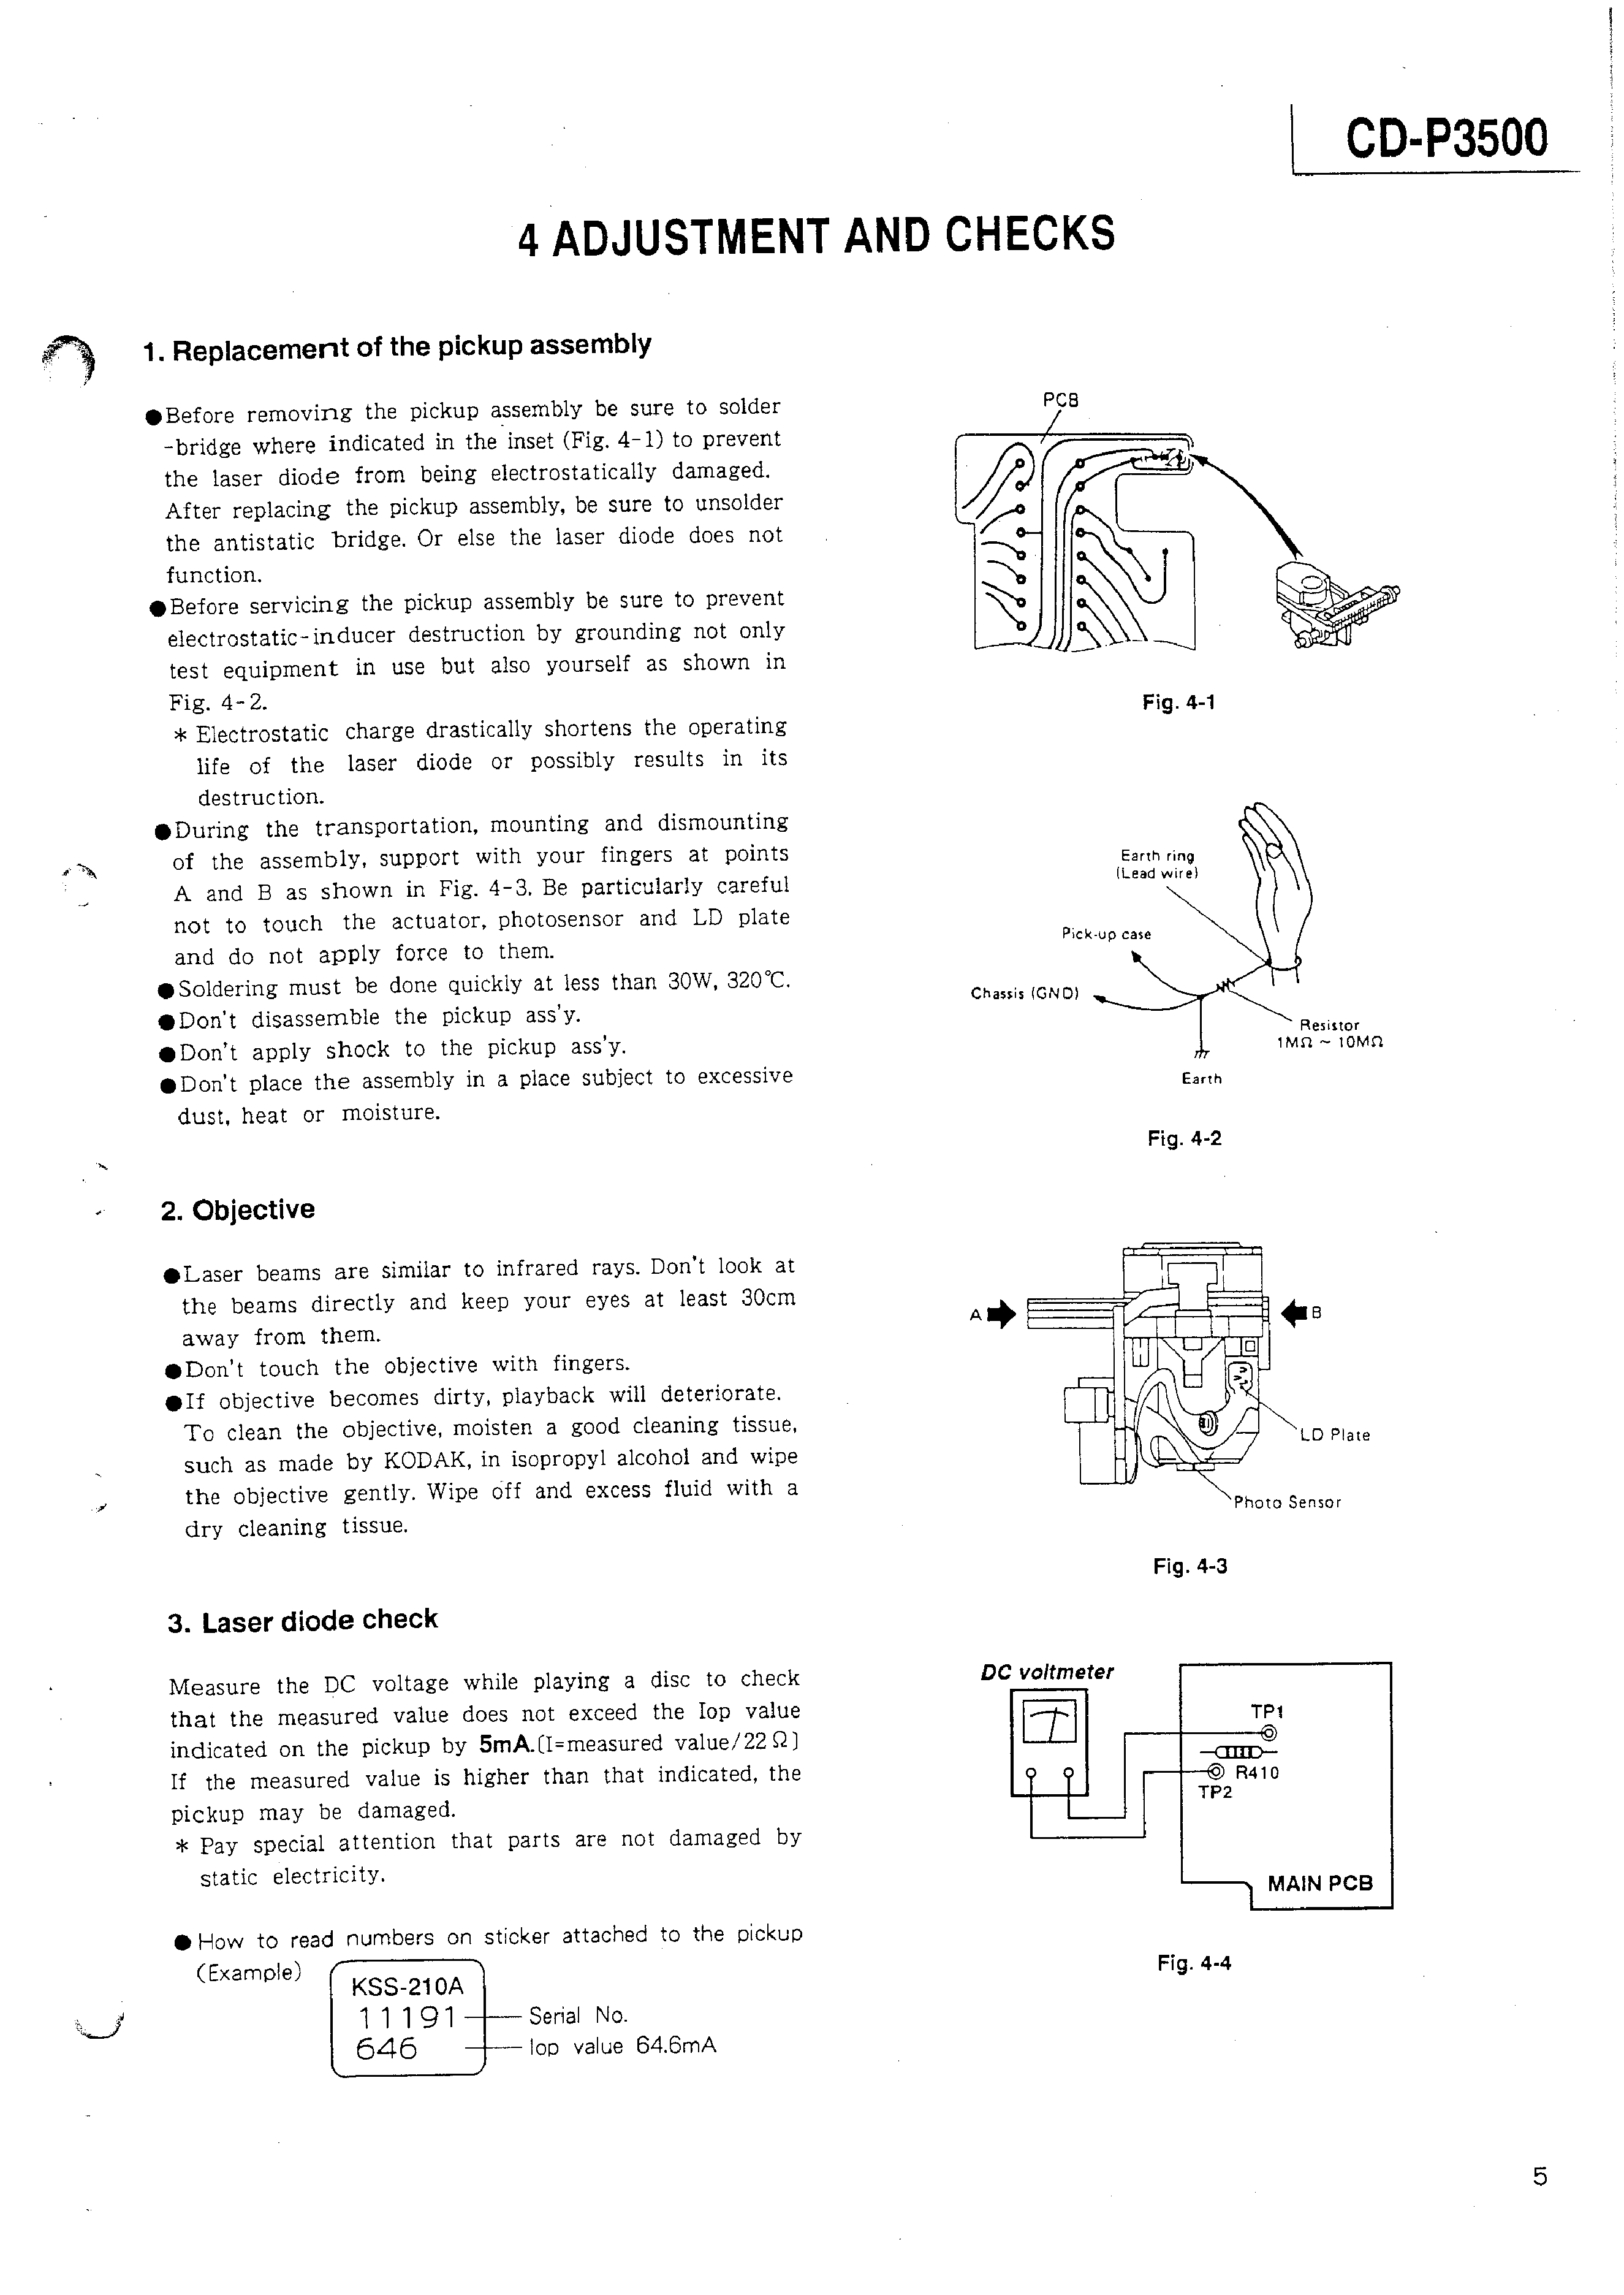 Teac Cd P3500 Service Manual